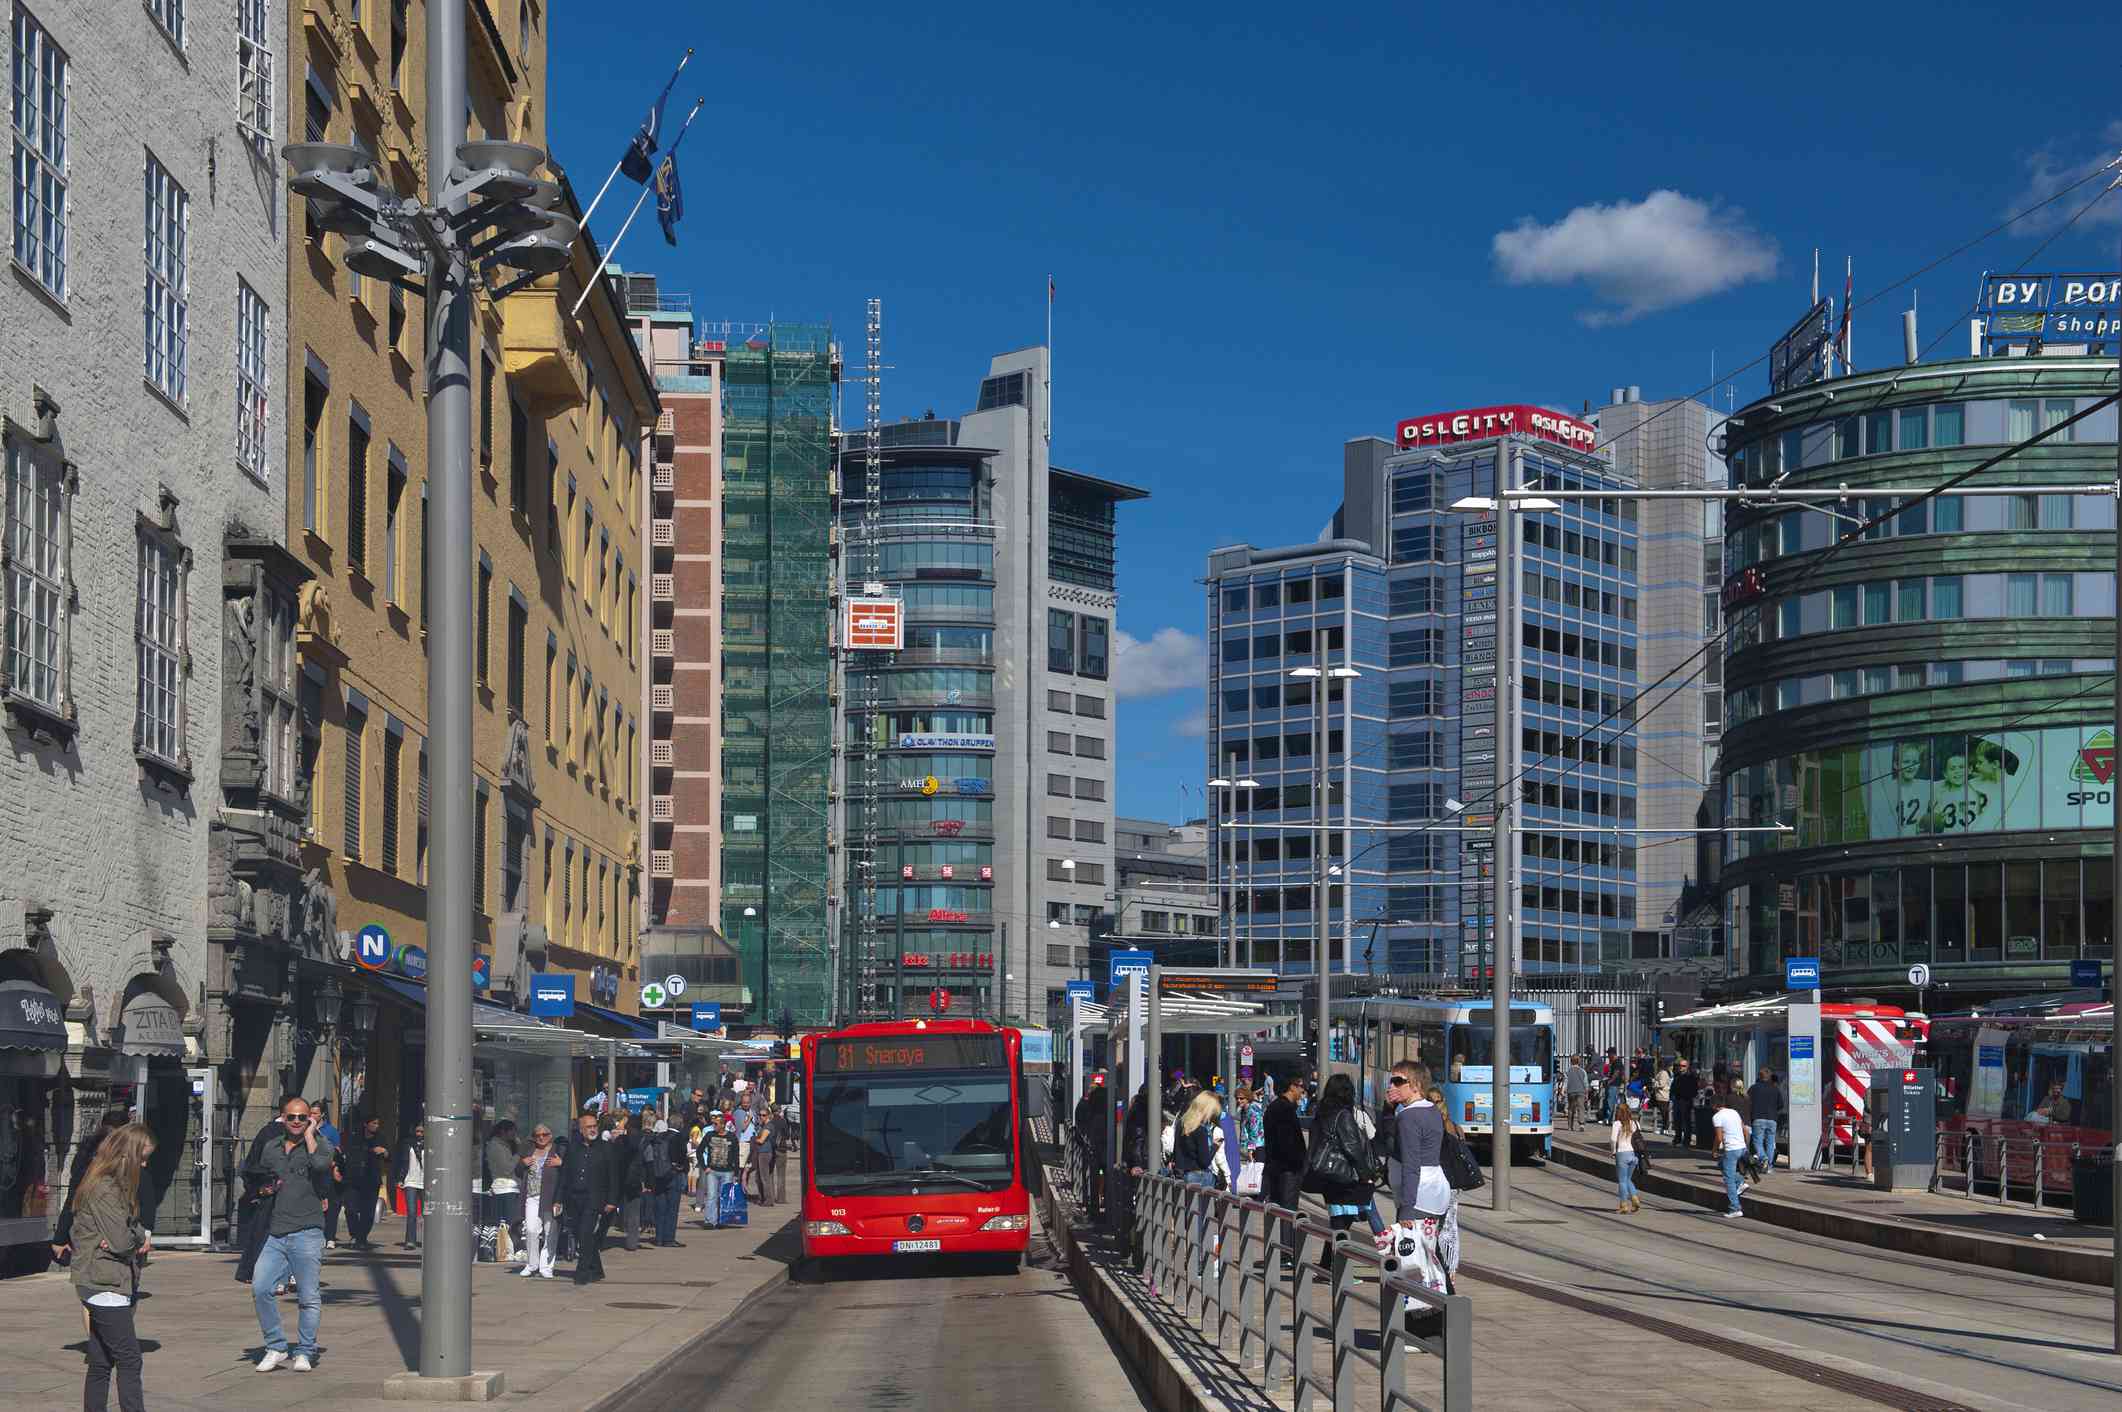 晴空万里、万里无云的晴朗日子里，在挪威首都奥斯陆市中心的高楼大厦上，人们在干净的人行道上行走，中间是一辆红色巴士